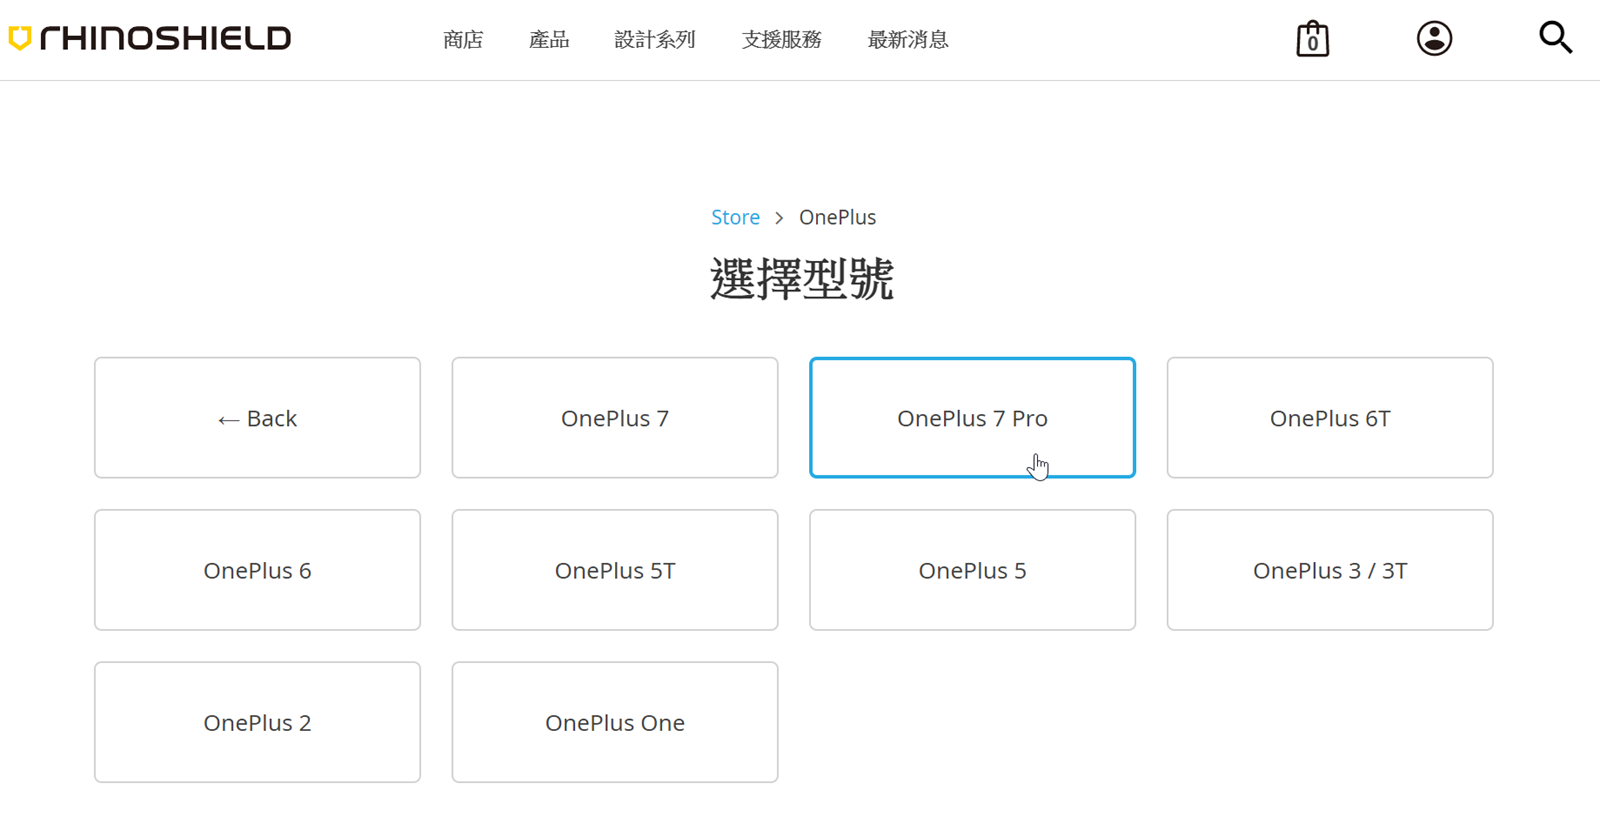 OnePlus 7 Pro 犀牛盾 SolidSuit 保護殼『個人化訂製保護殼』分享 @3C 達人廖阿輝